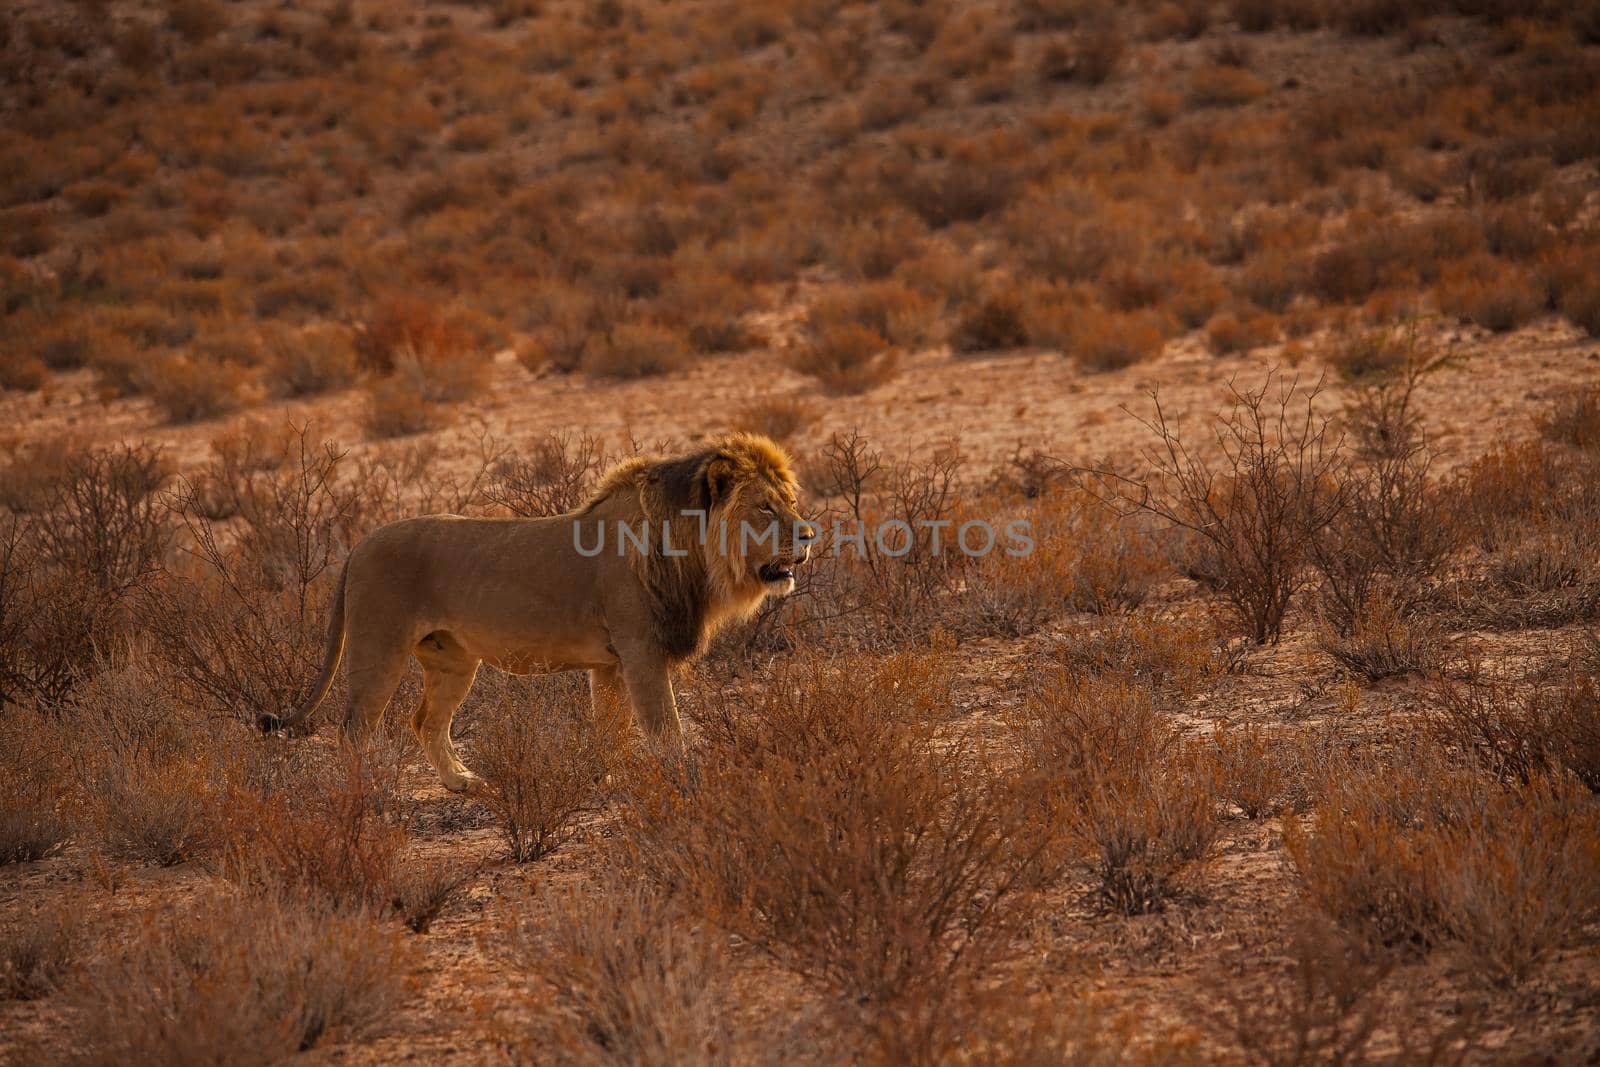 Kalahari Lion (Panthera leo) 5218 by kobus_peche